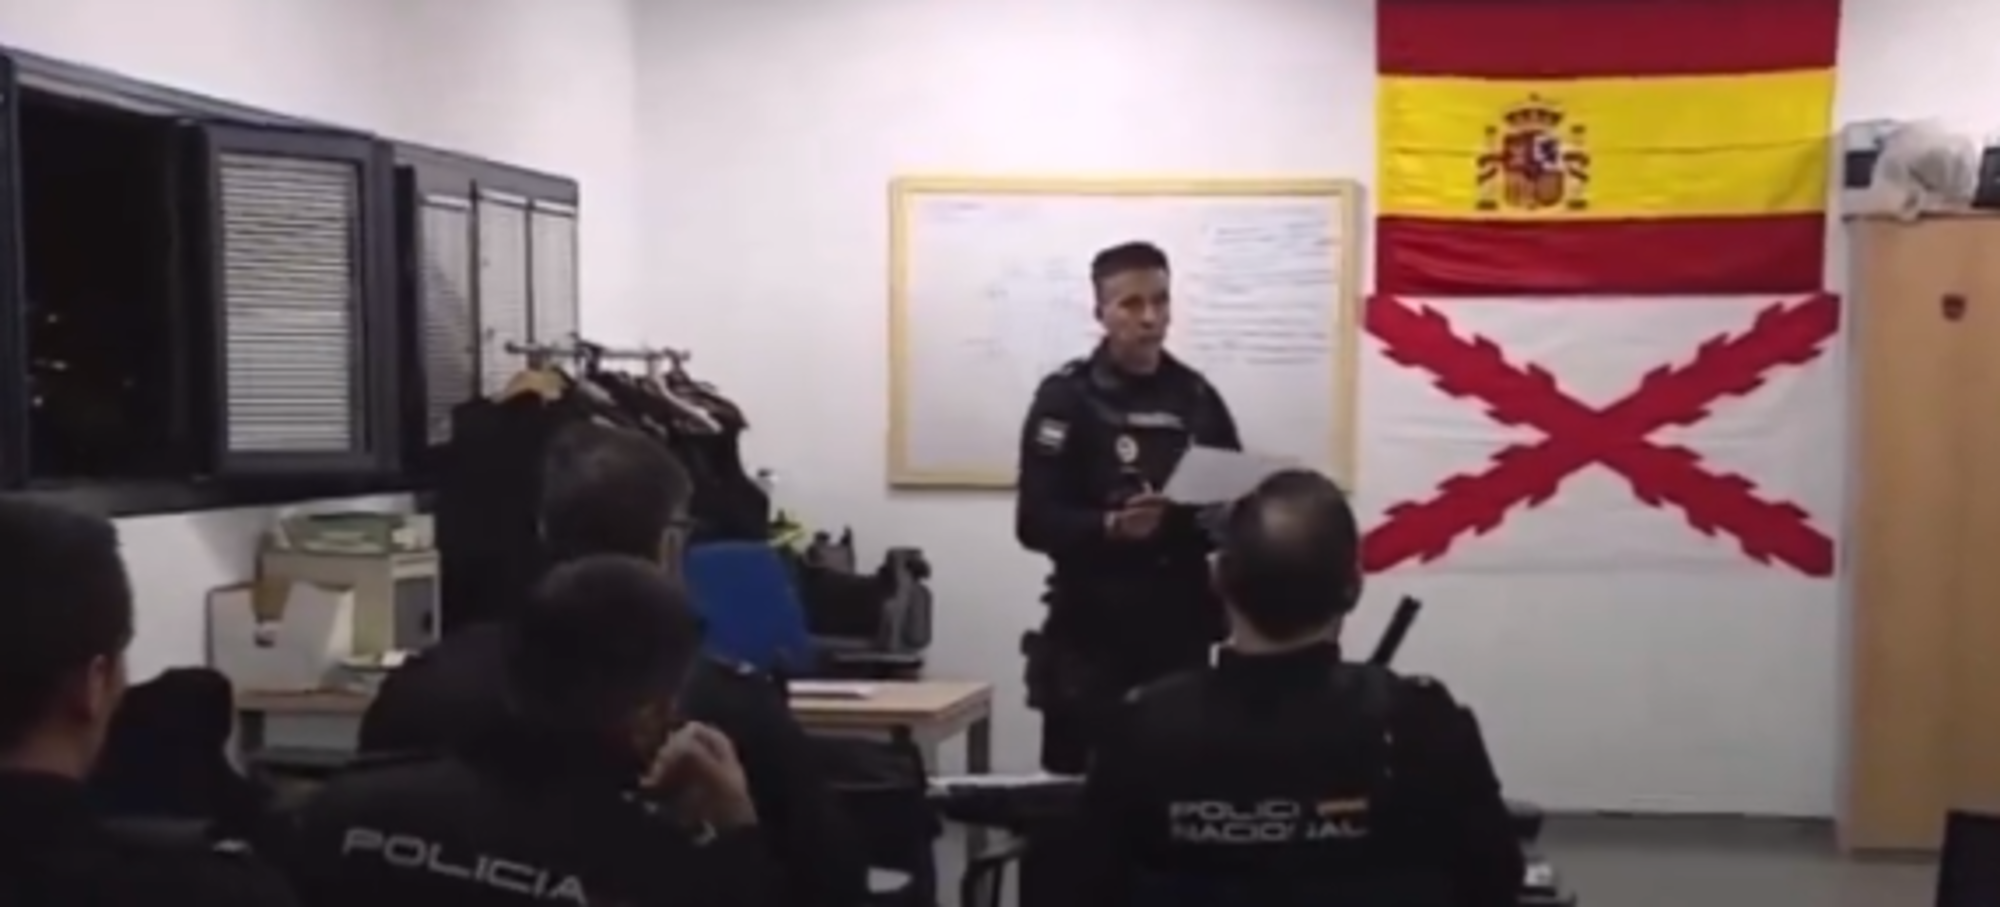 Indignació per la presència d'una bandera d'ultradreta en una comissaria de la Policia Nacional